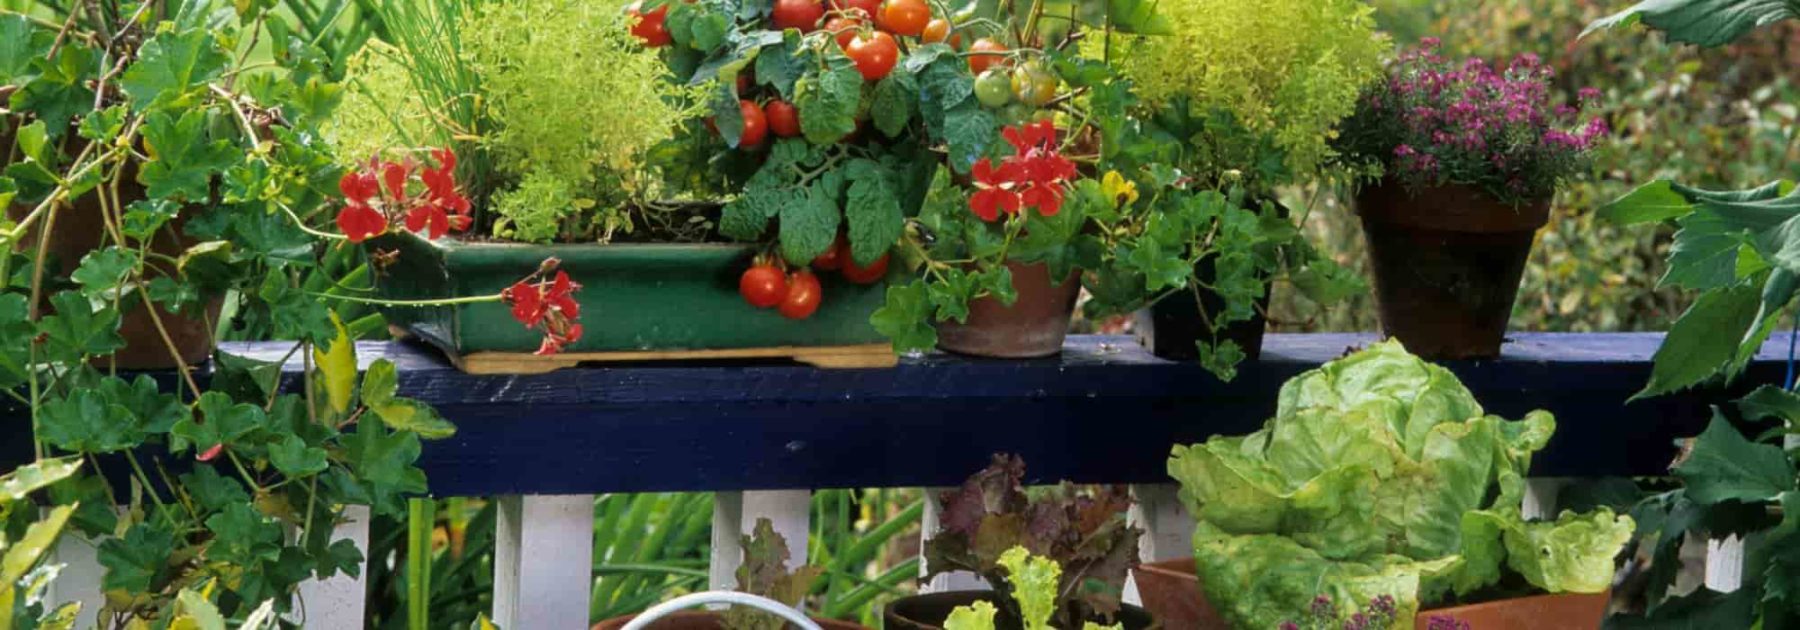 Quels légumes faire pousser sur son balcon ? La Ferme de Sainte Marthe